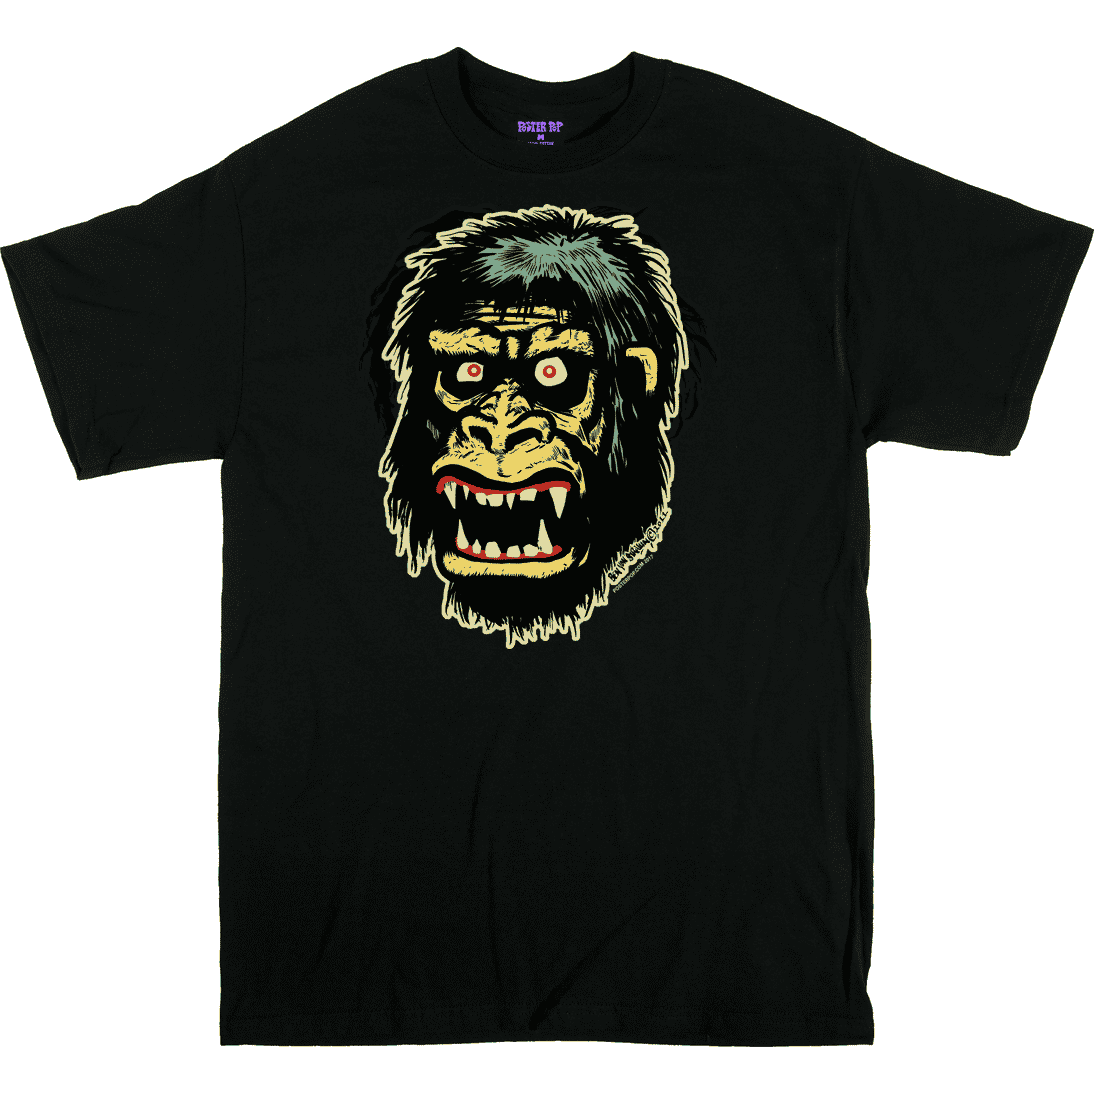 Ben Von Strawn Go Go Gorilla T-Shirt